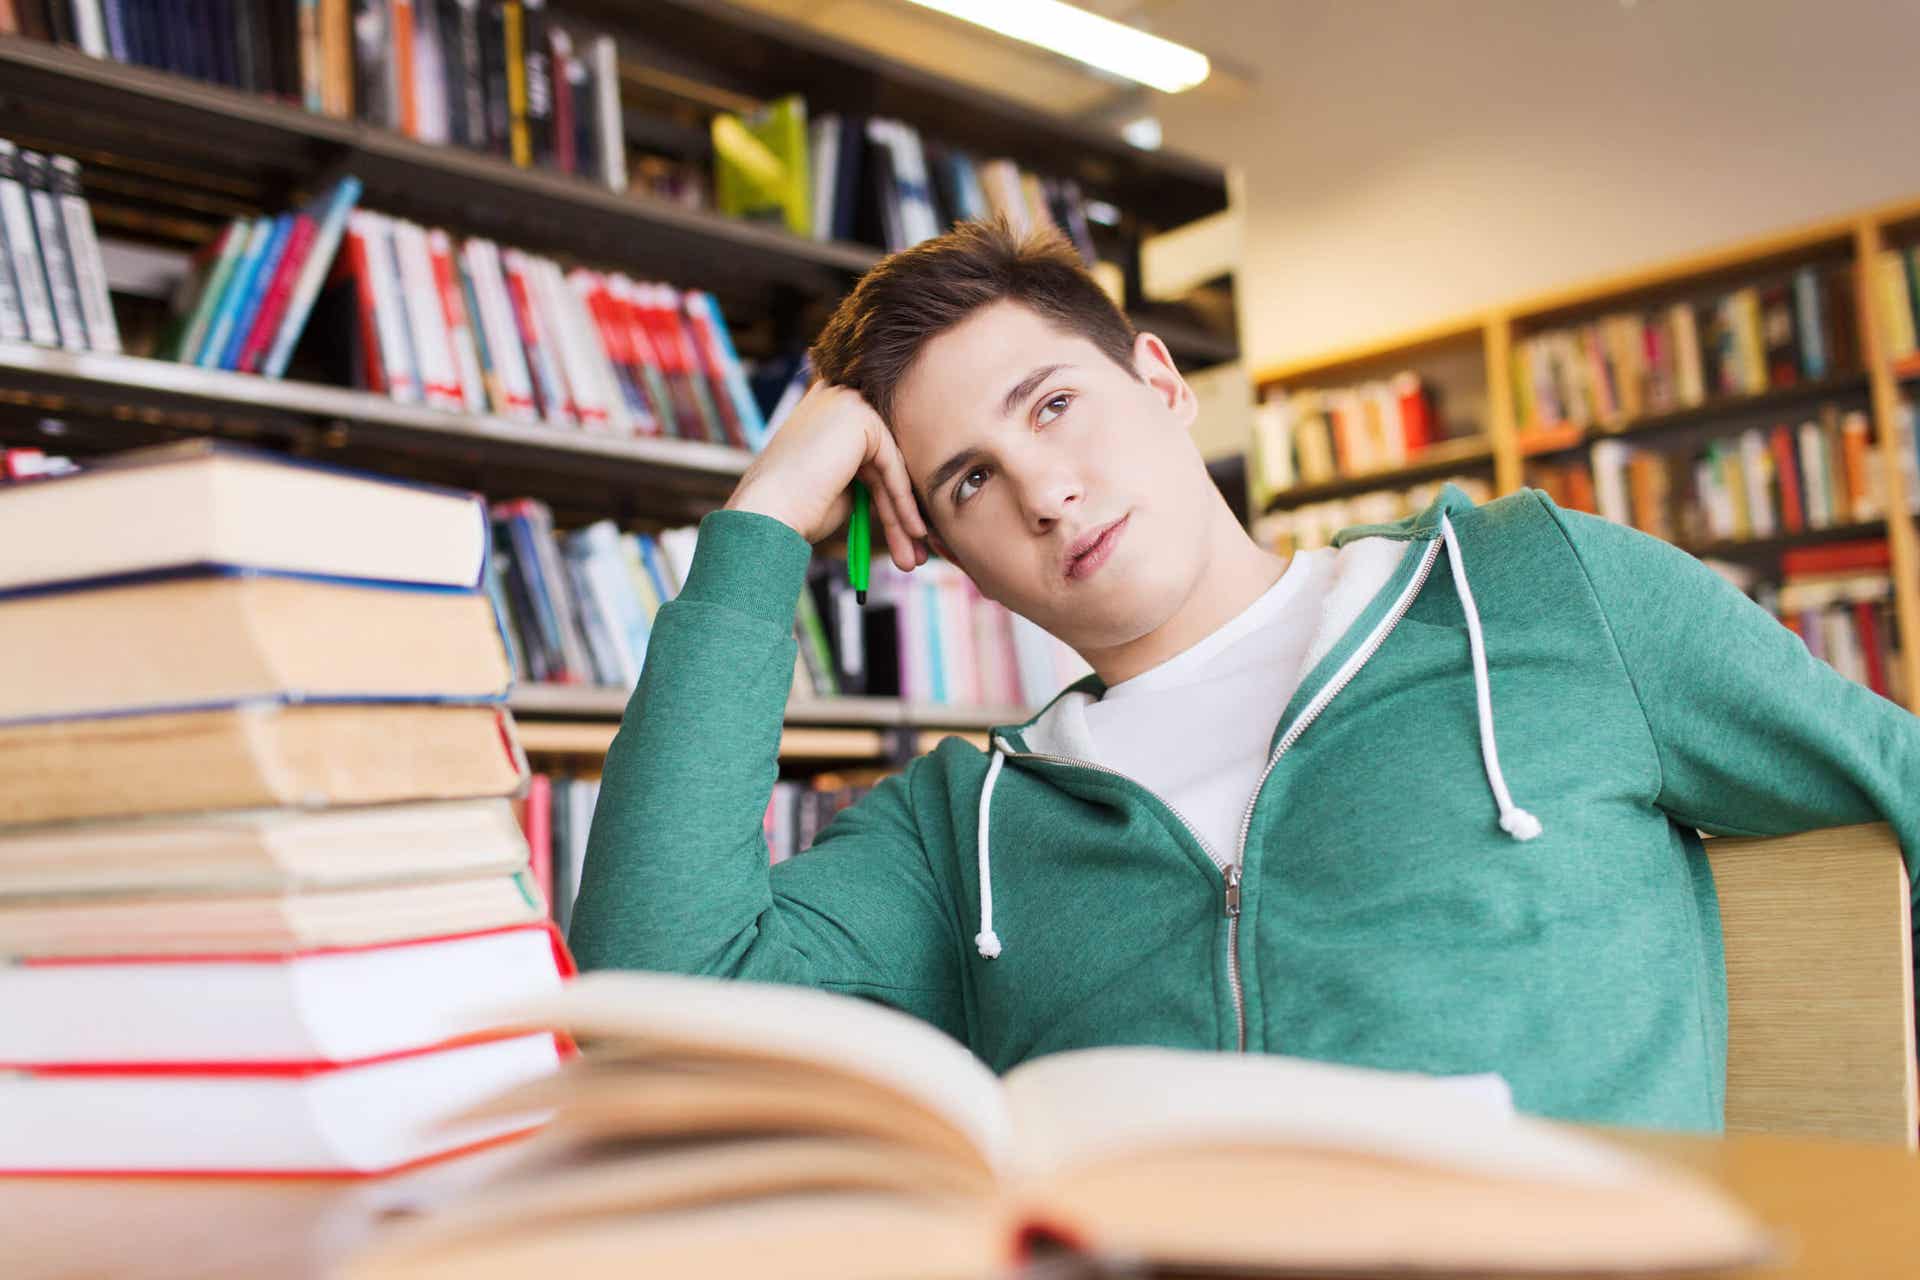 Los consejos para evitar el sueño mientras estudias incluyen levantarse